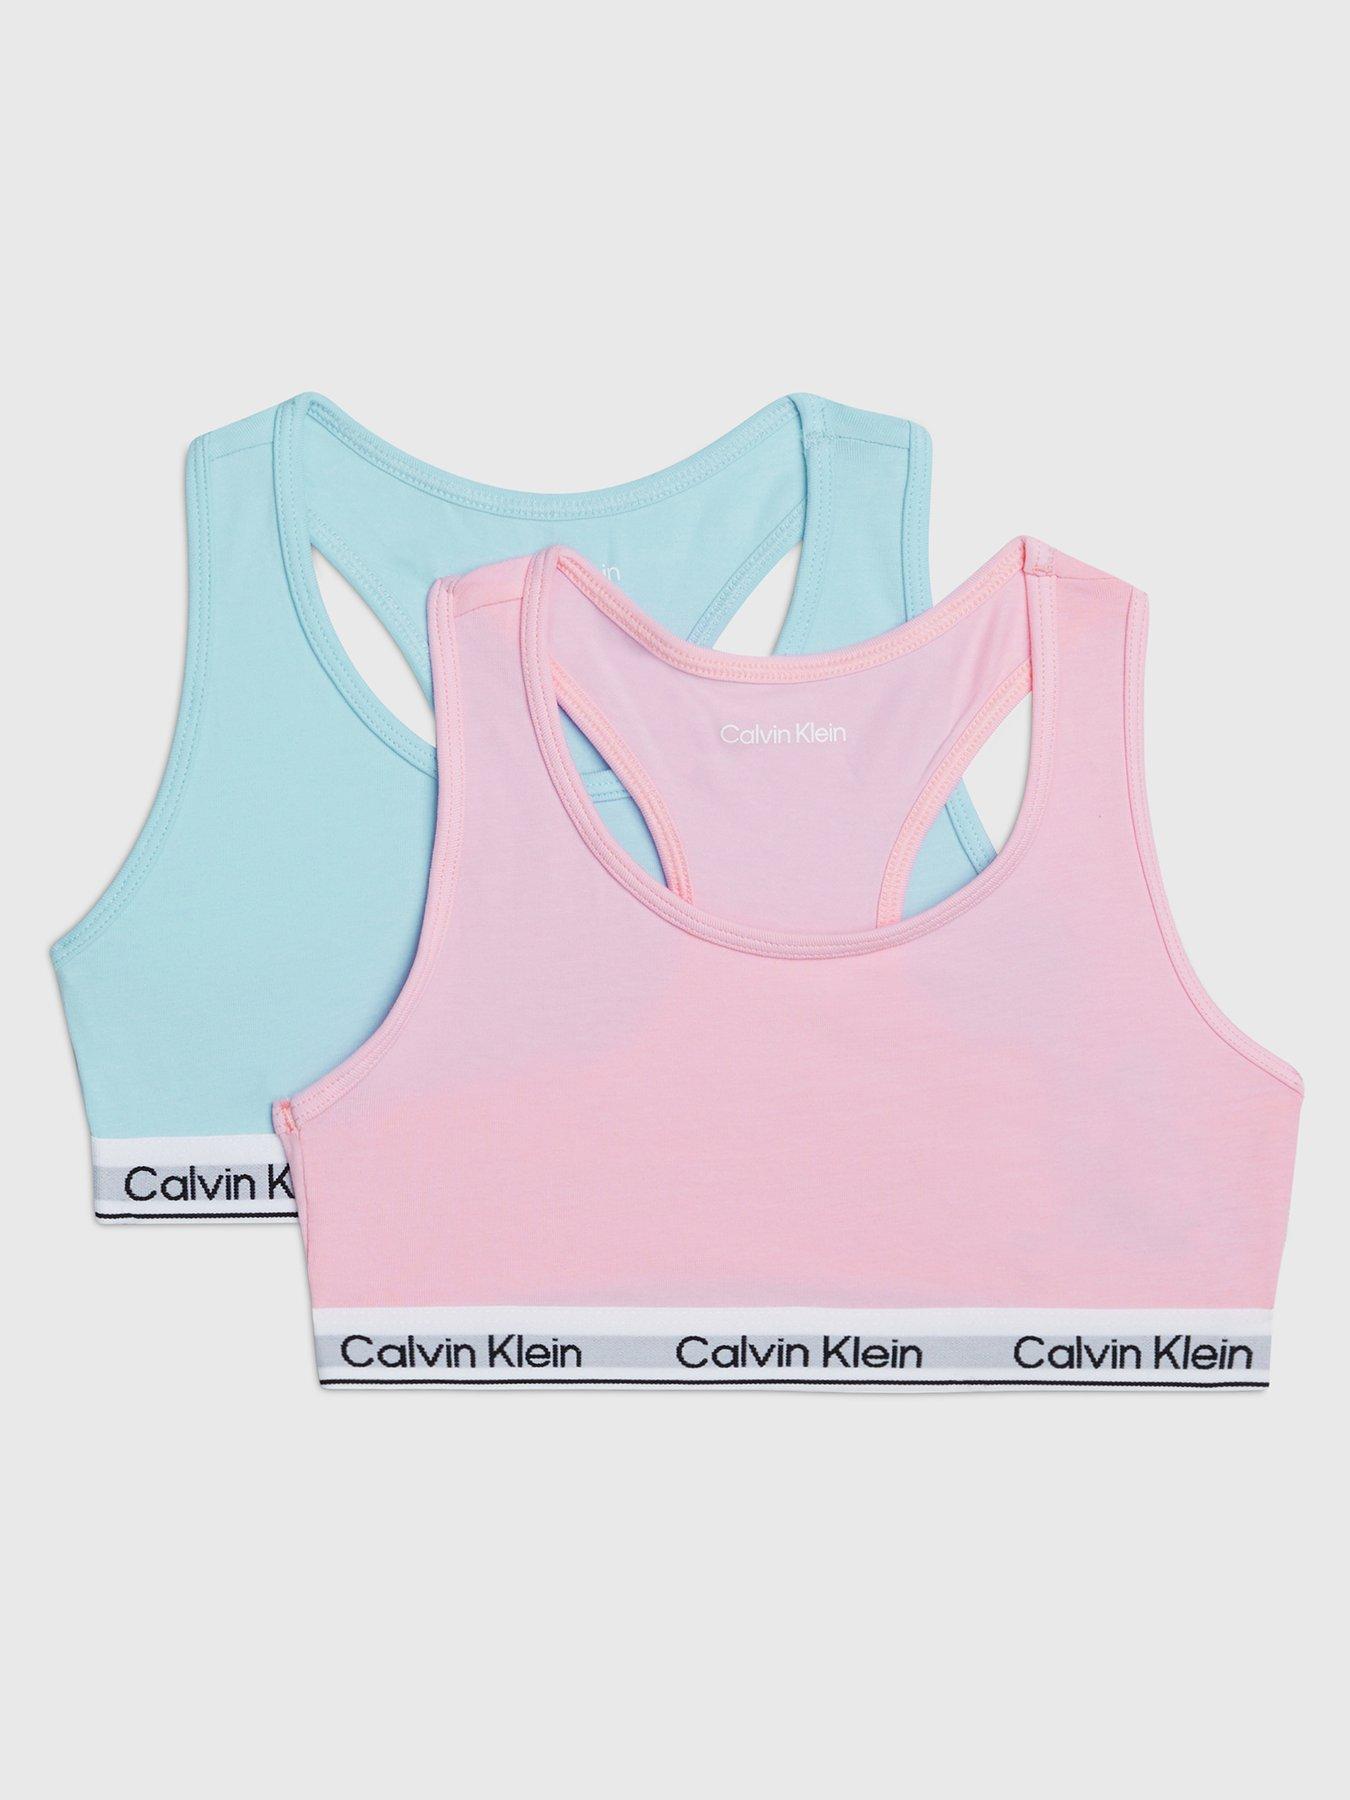 Calvin Klein Underwear, Shirts & Tops, Calvin Klein Girls Bundle Sports Bras  12 Year Old